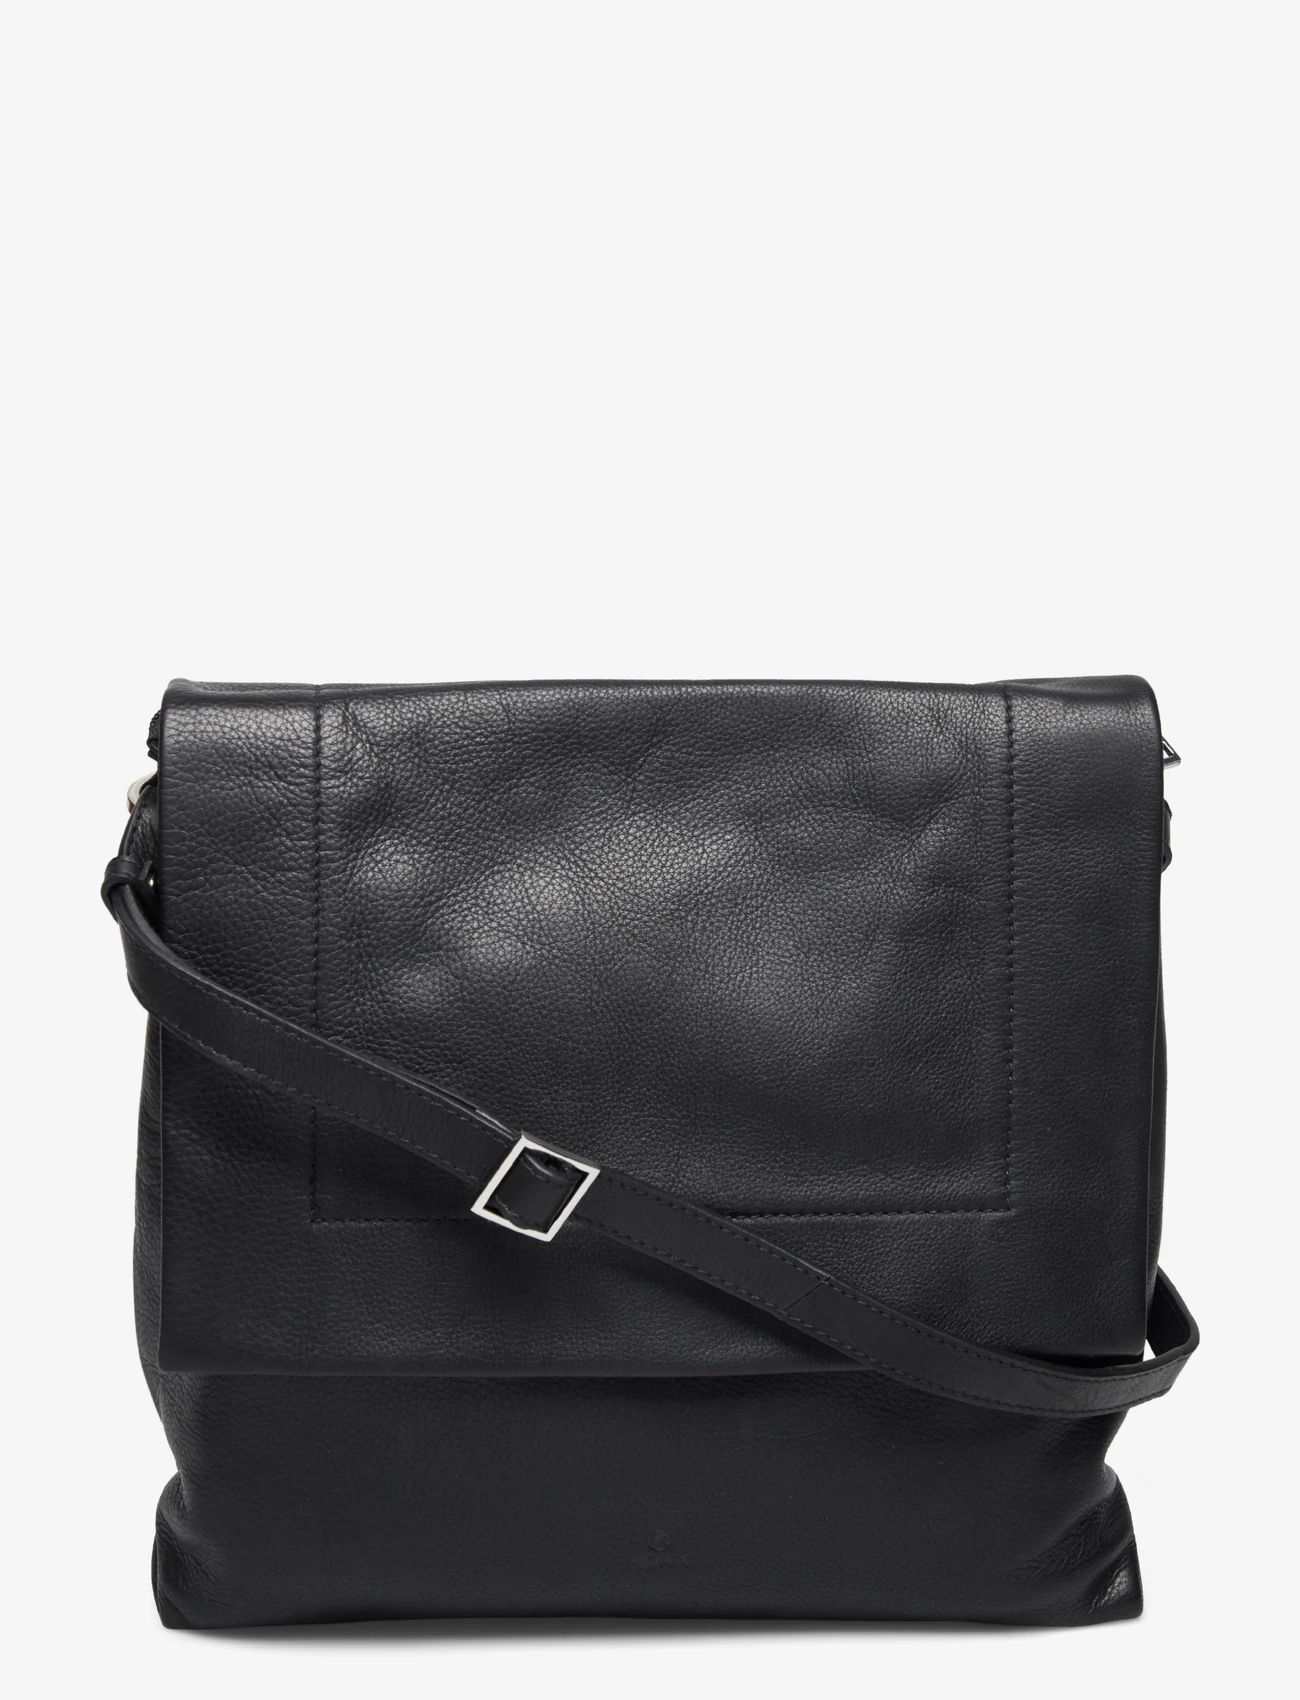 Adax - Venezia shoulder bag Ninna - ballīšu apģērbs par outlet cenām - black - 0